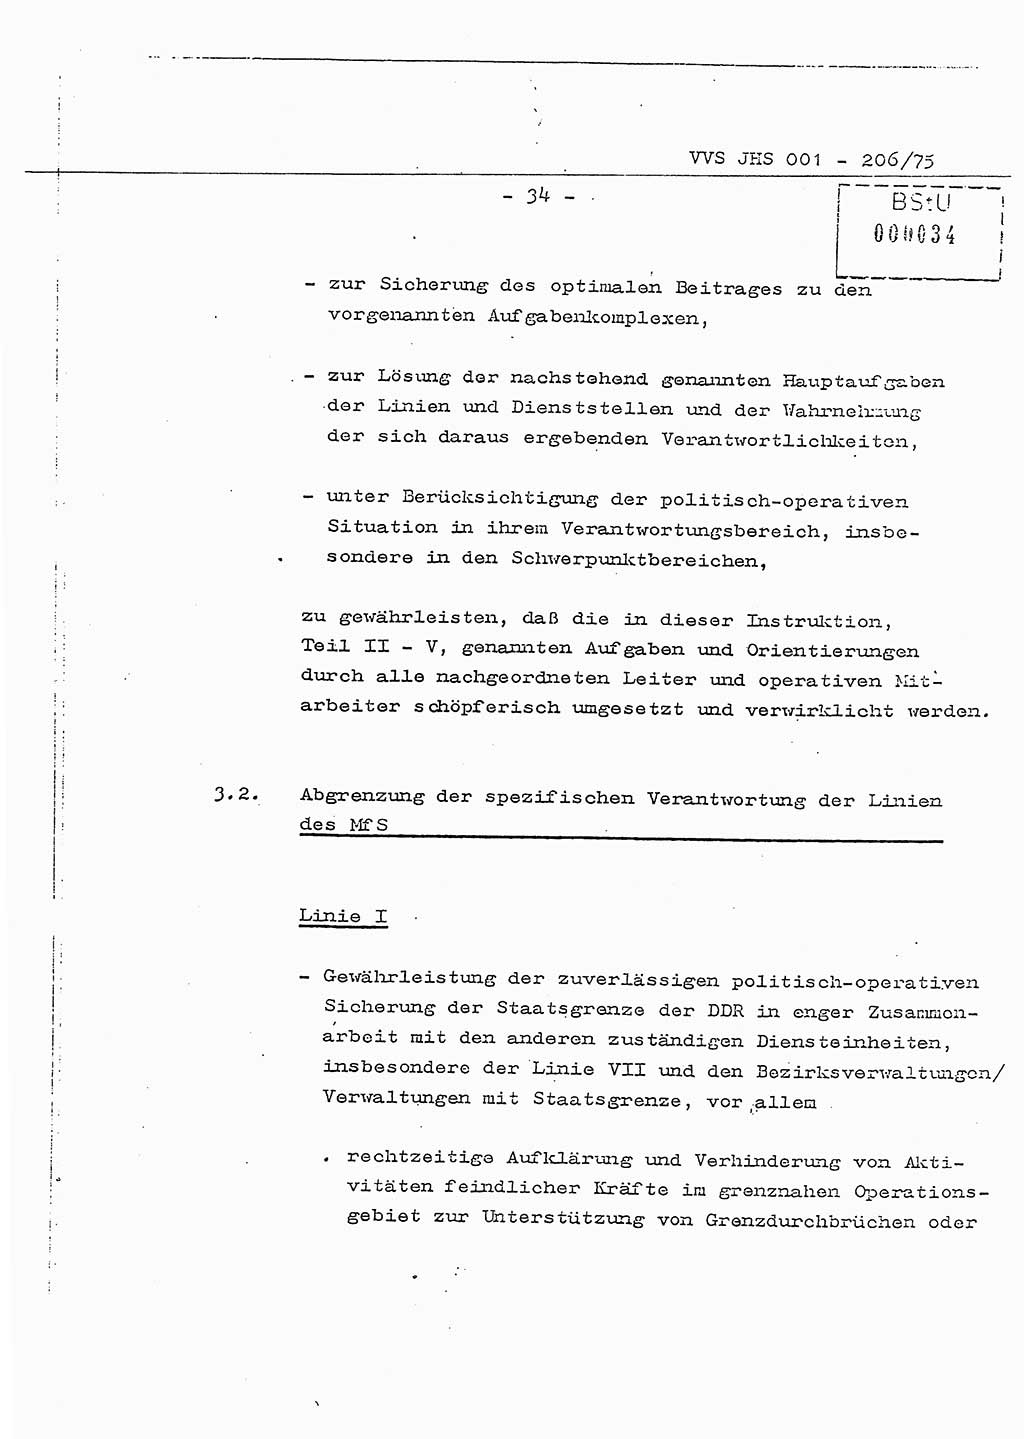 Dissertation Generalmajor Manfred Hummitzsch (Leiter der BV Leipzig), Generalmajor Heinz Fiedler (HA Ⅵ), Oberst Rolf Fister (HA Ⅸ), Ministerium für Staatssicherheit (MfS) [Deutsche Demokratische Republik (DDR)], Juristische Hochschule (JHS), Vertrauliche Verschlußsache (VVS) 001-206/75, Potsdam 1975, Seite 34 (Diss. MfS DDR JHS VVS 001-206/75 1975, S. 34)